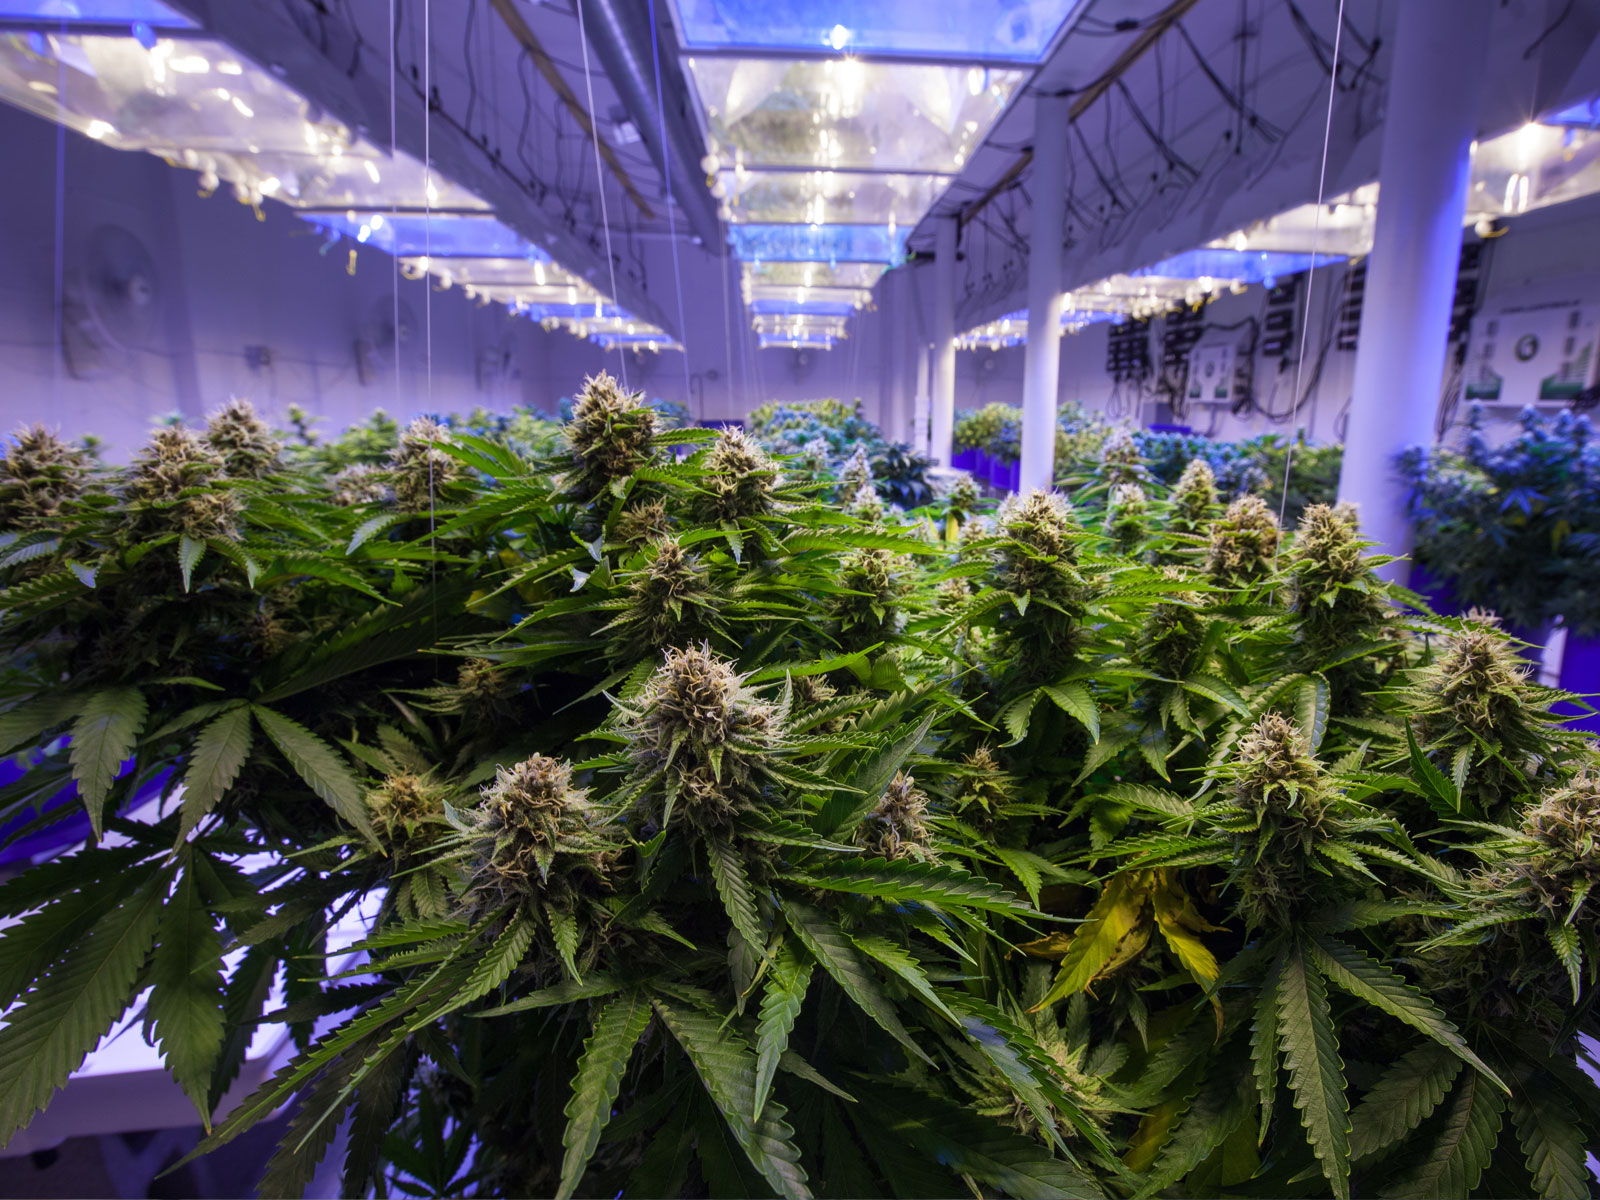 Cannabis Grow Room